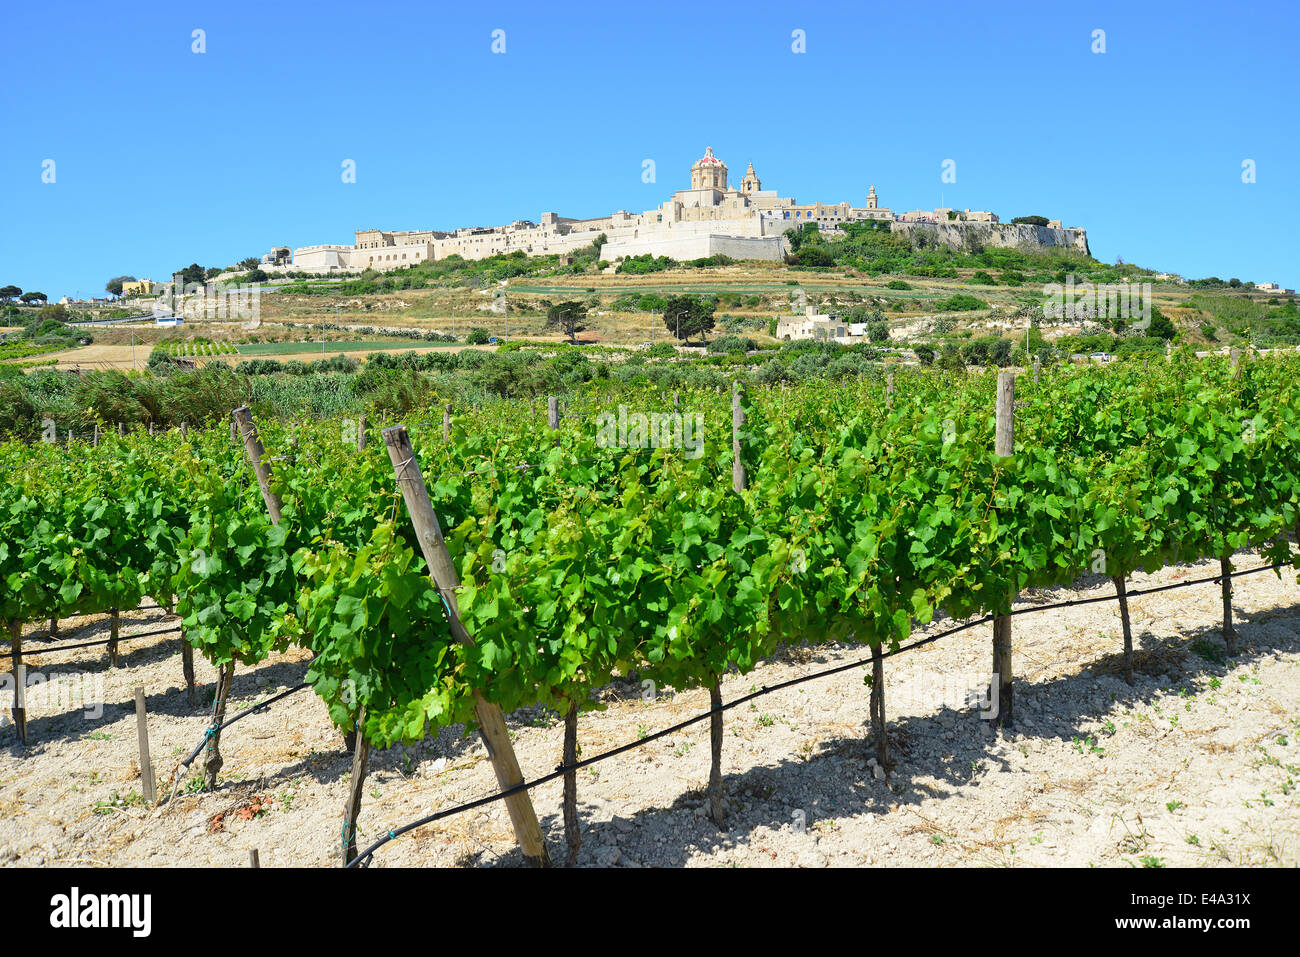 Vue sur la cité médiévale de Mdina (L-Mdina) et vignoble, District de l'Ouest, Malte Majjistral Région, République de Malte Banque D'Images